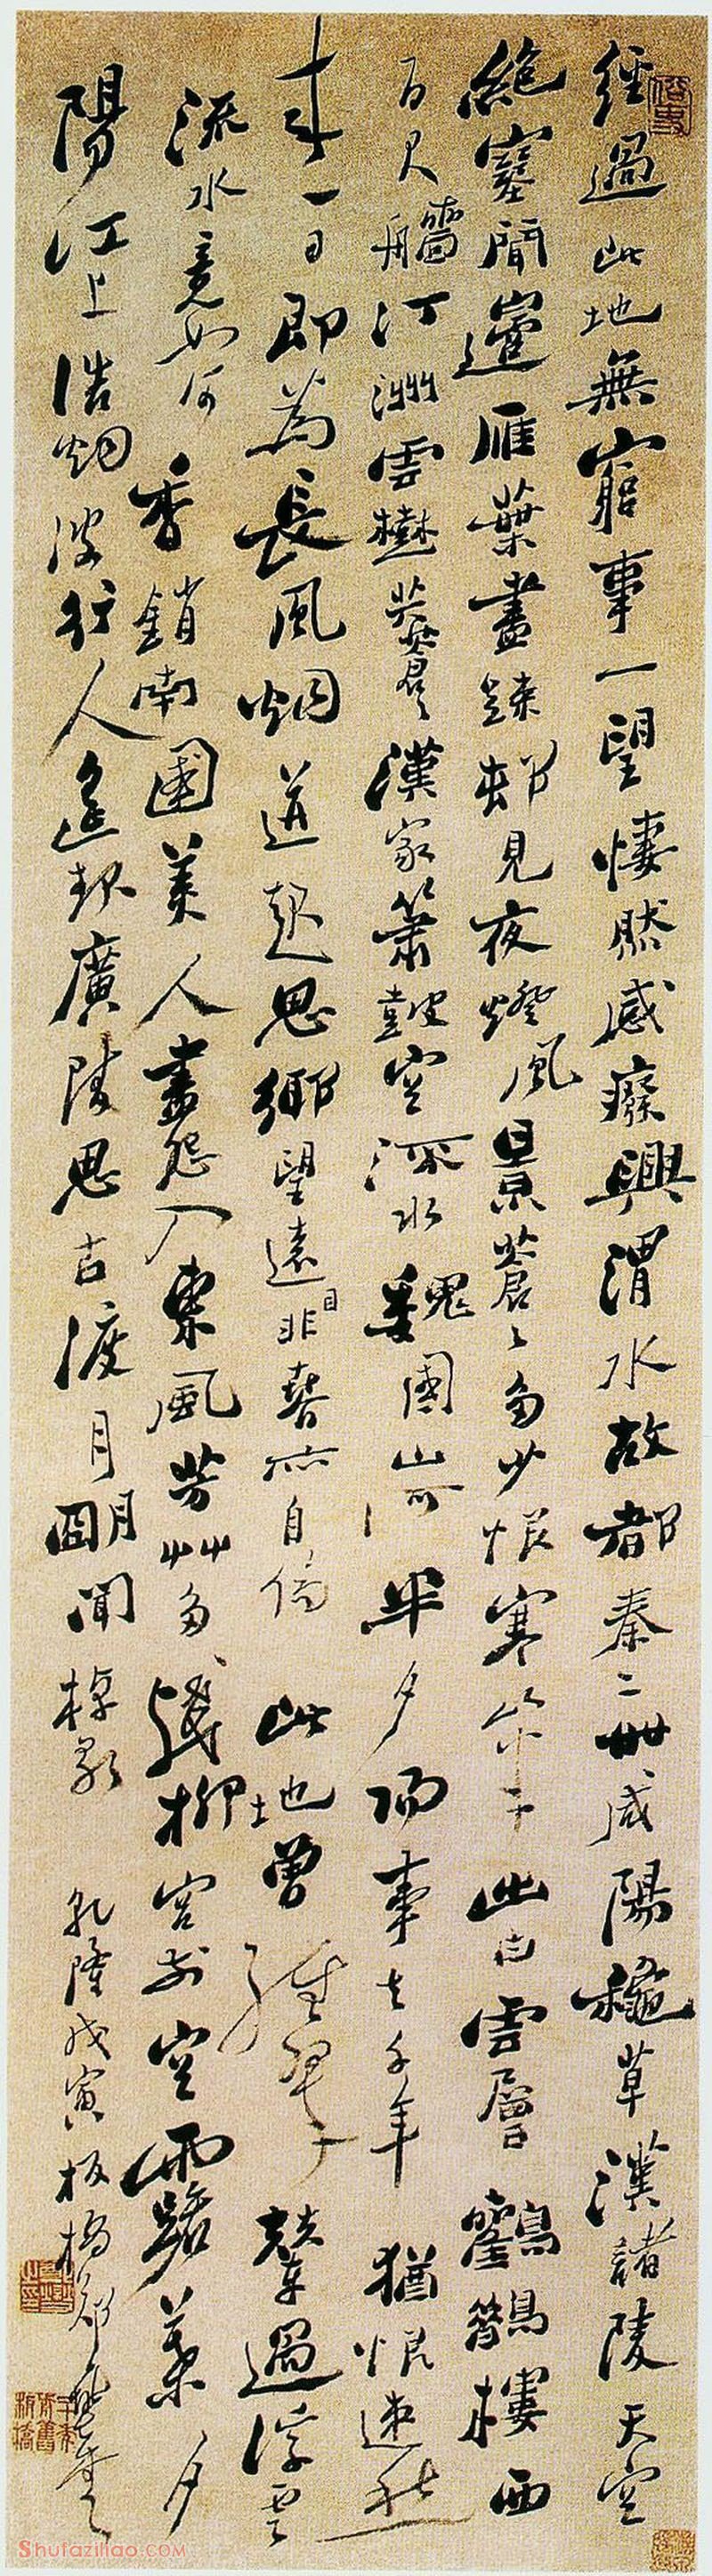 郑燮《行书七律二首》 1758年 纸本 镇江博物馆藏